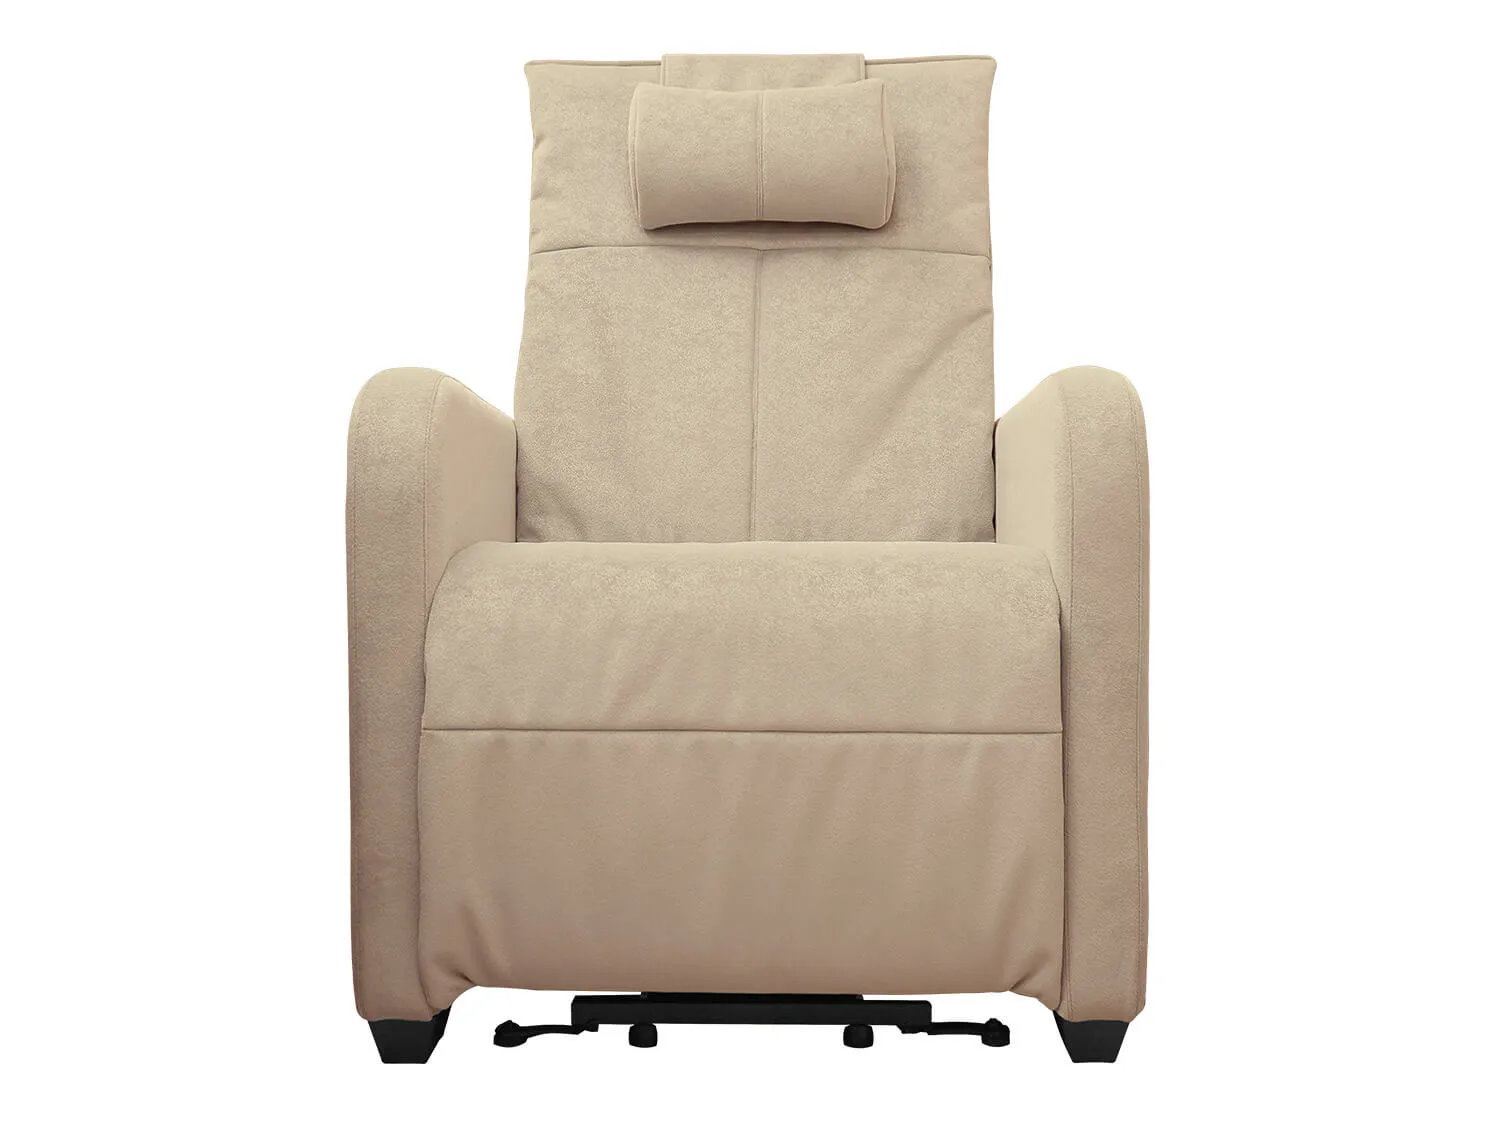 Кресло реклайнер с подъемом FUJIMO LIFT CHAIR F3005 FLWL цвет на заказ - 3 